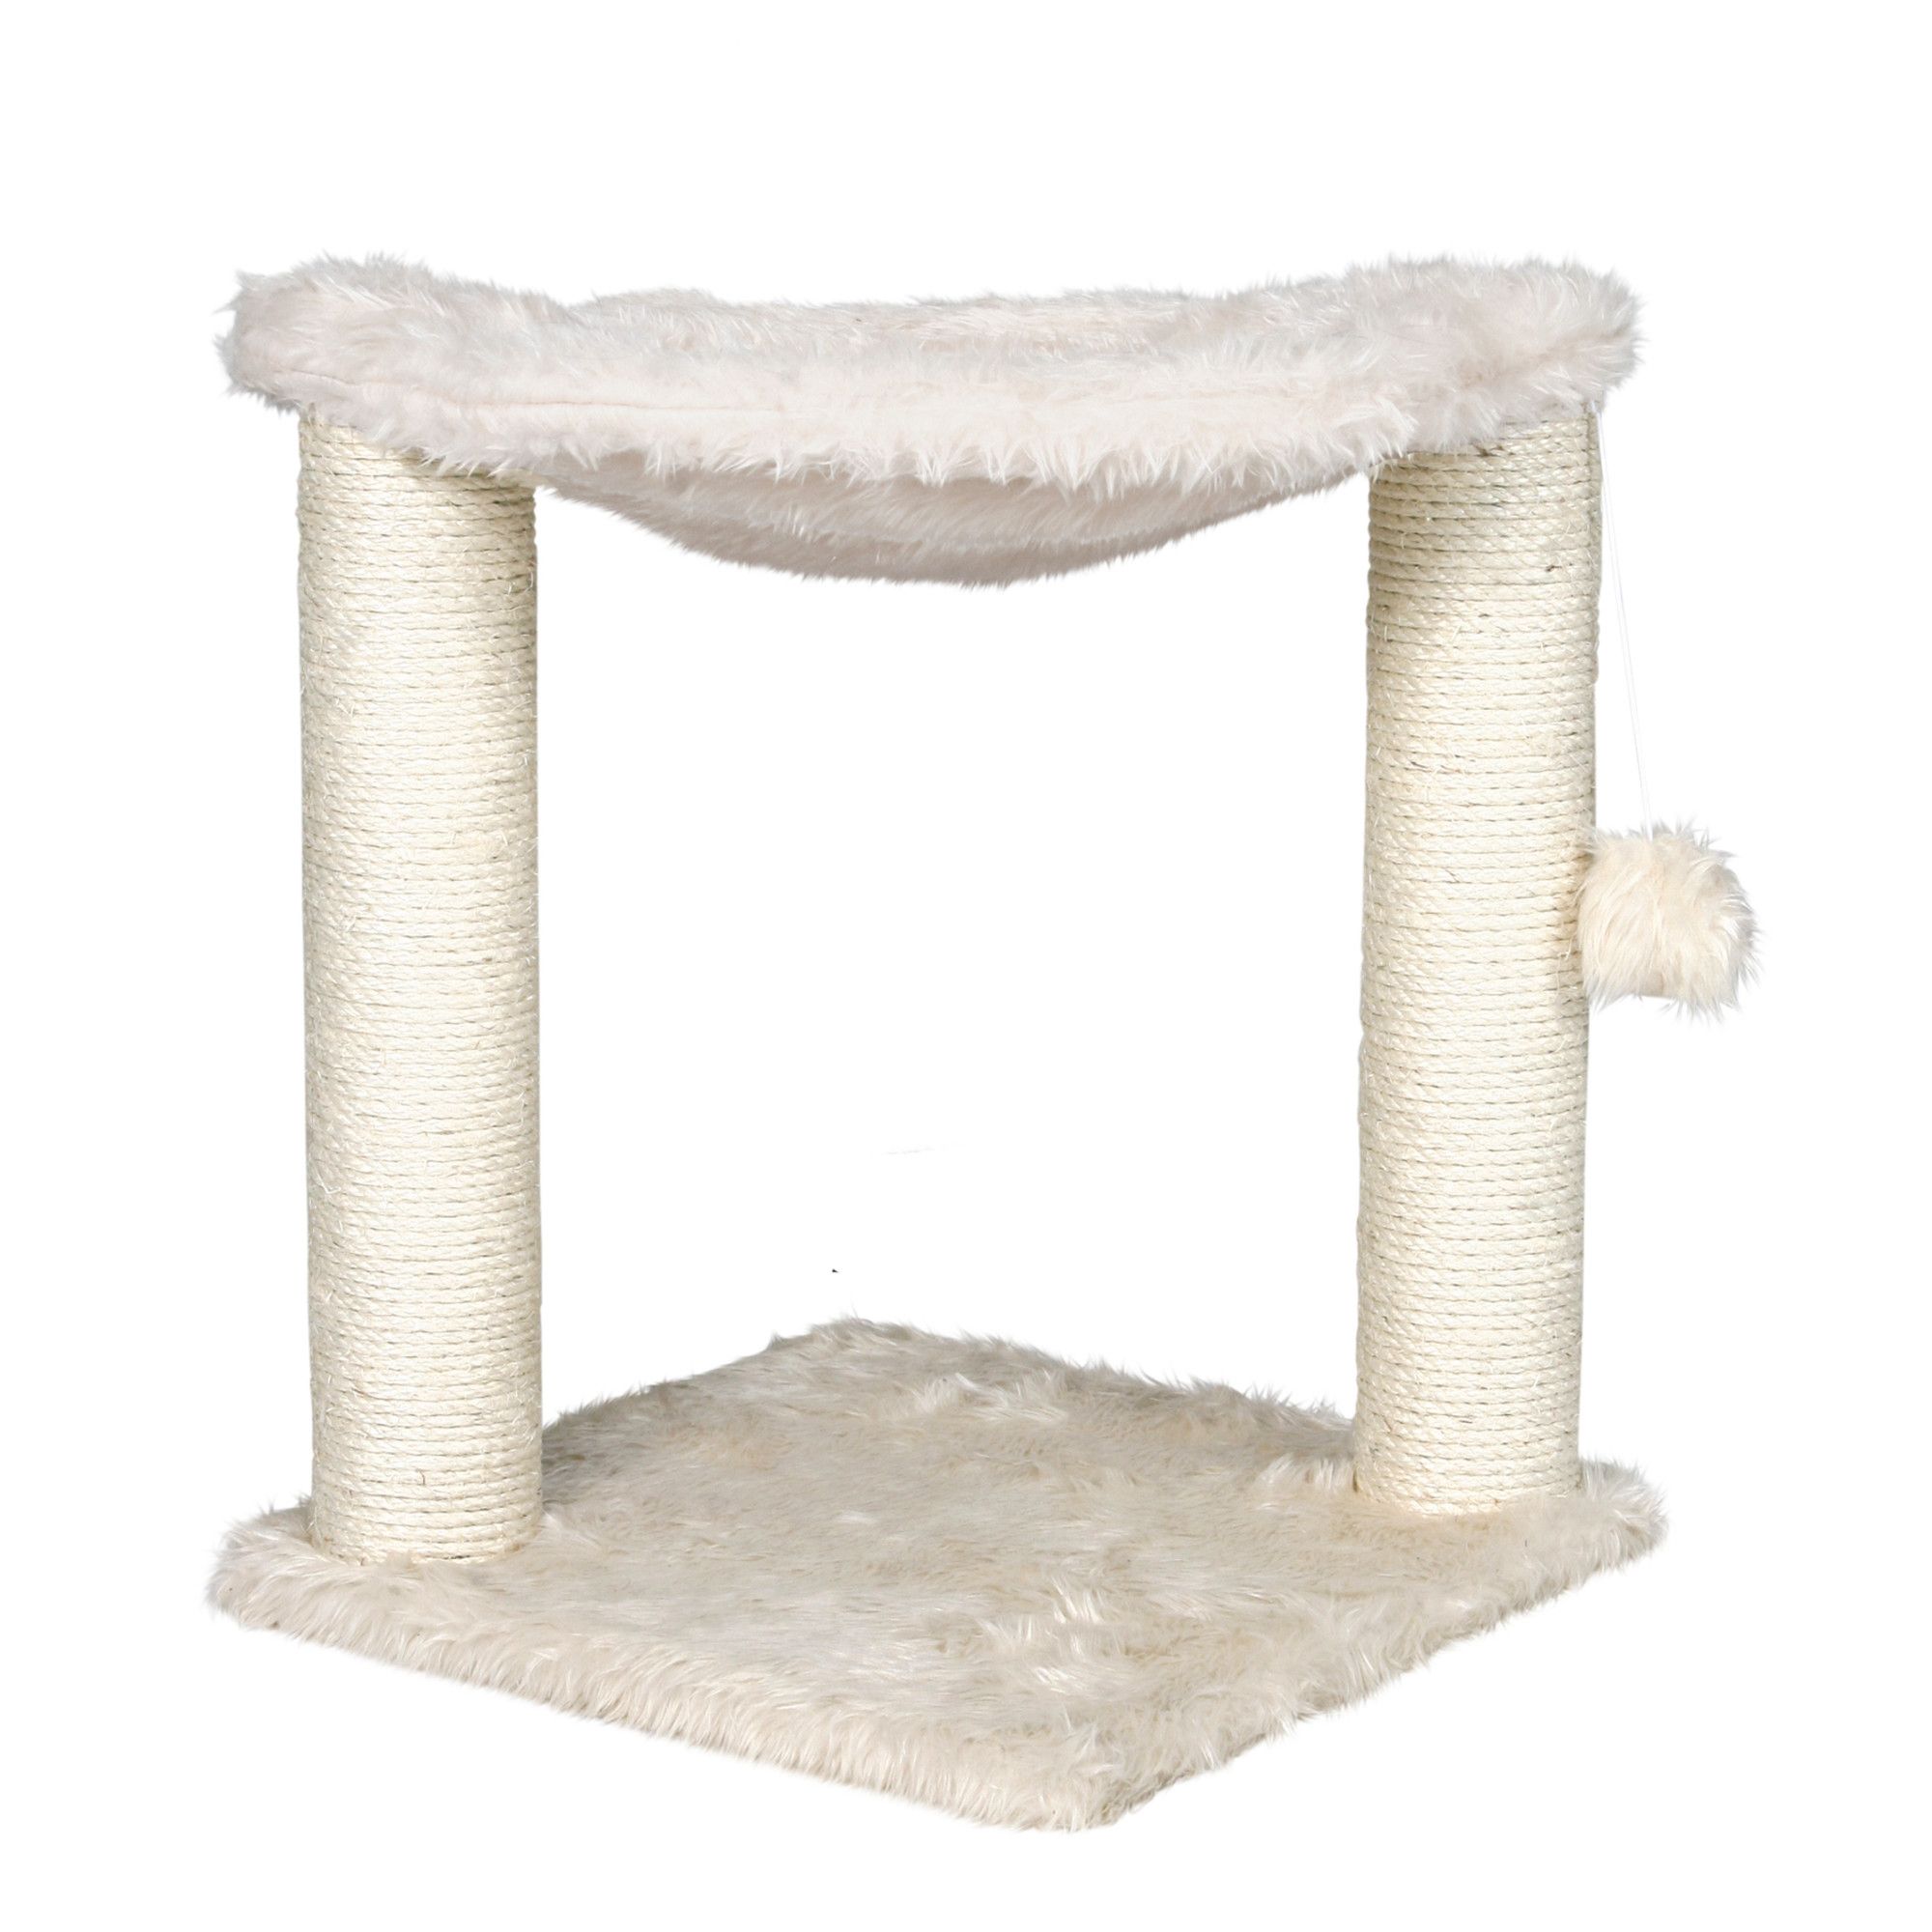 trixie cat furniture